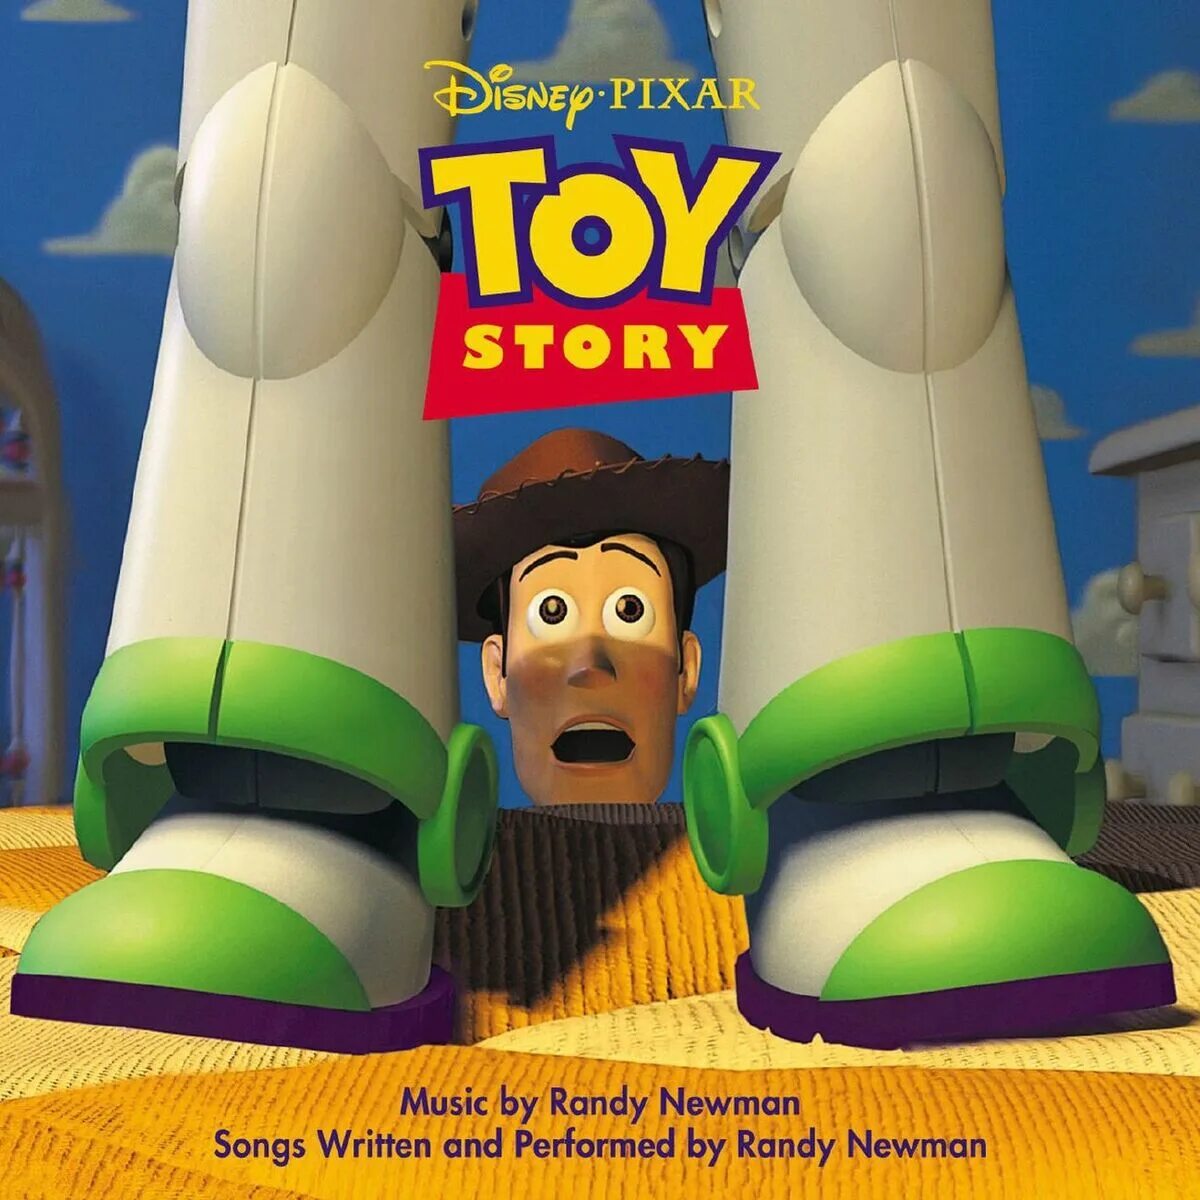 Story soundtrack. История игрушек. Toy story 1995. Рэнди история игрушек. Рэнди Ньюман история игрушек.